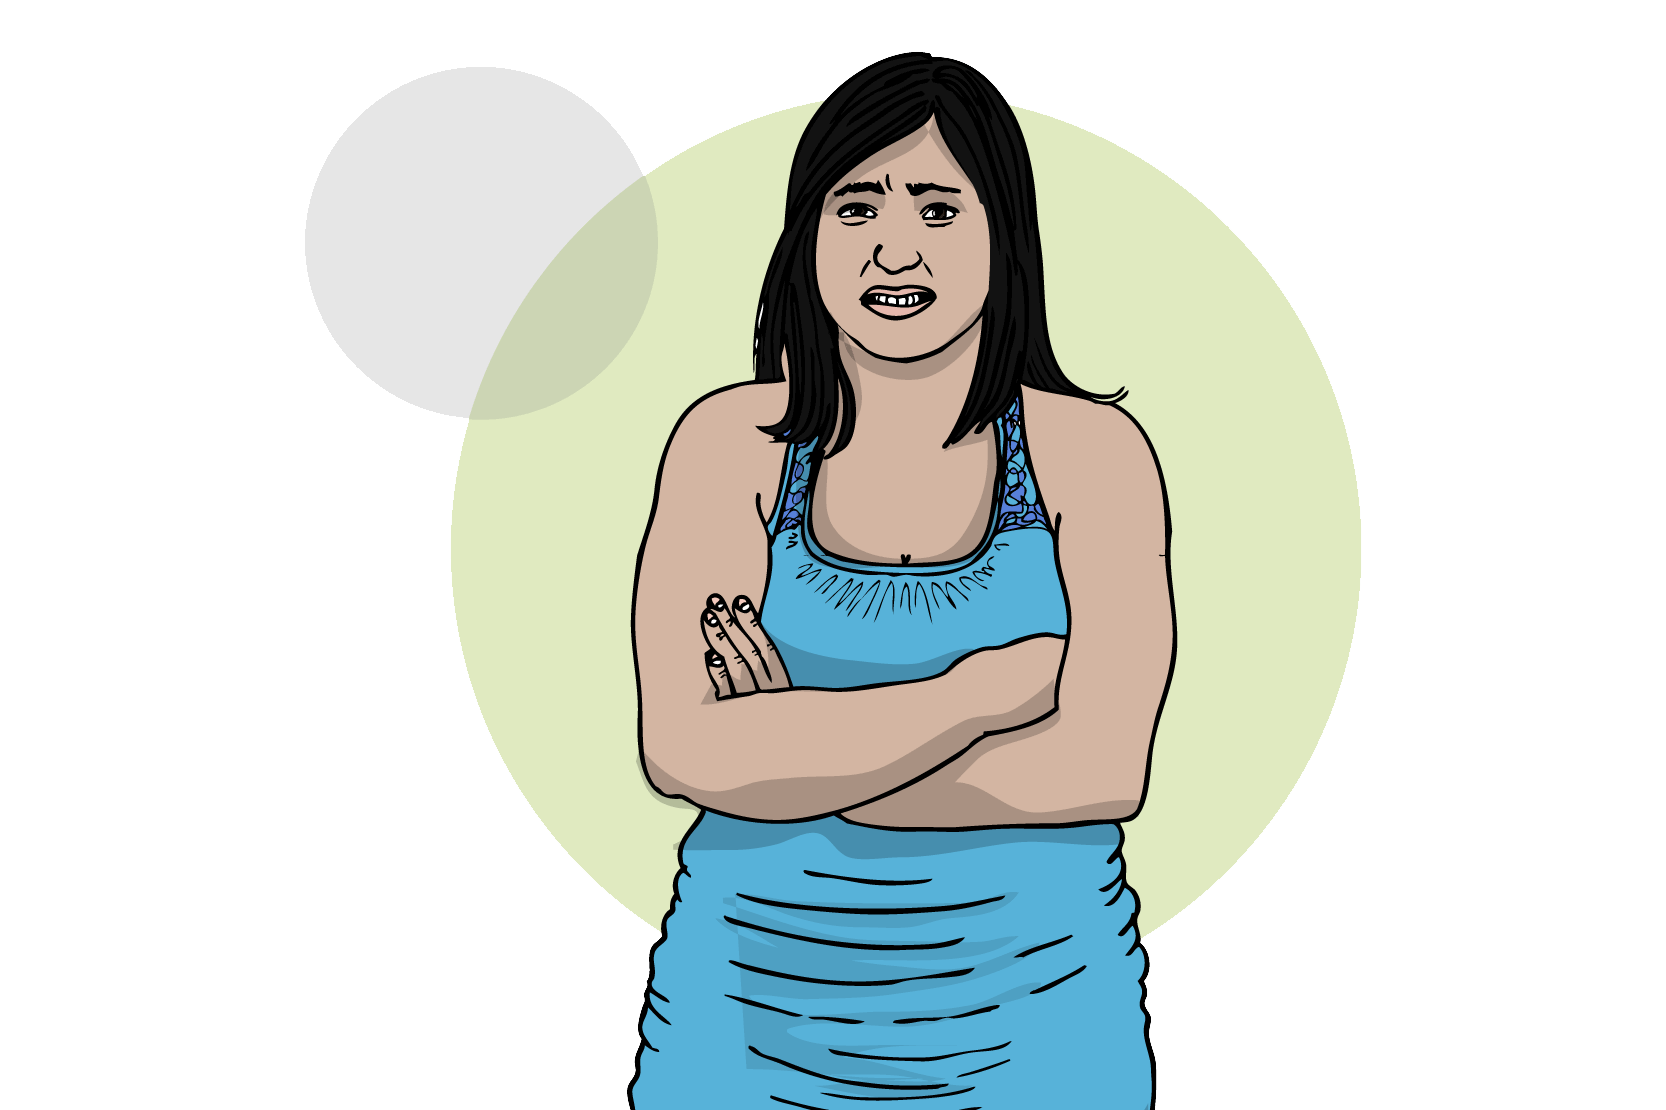 En person med svart hår som står med armarna korsade över bröstet, och ser skeptisk eller arg ut. 